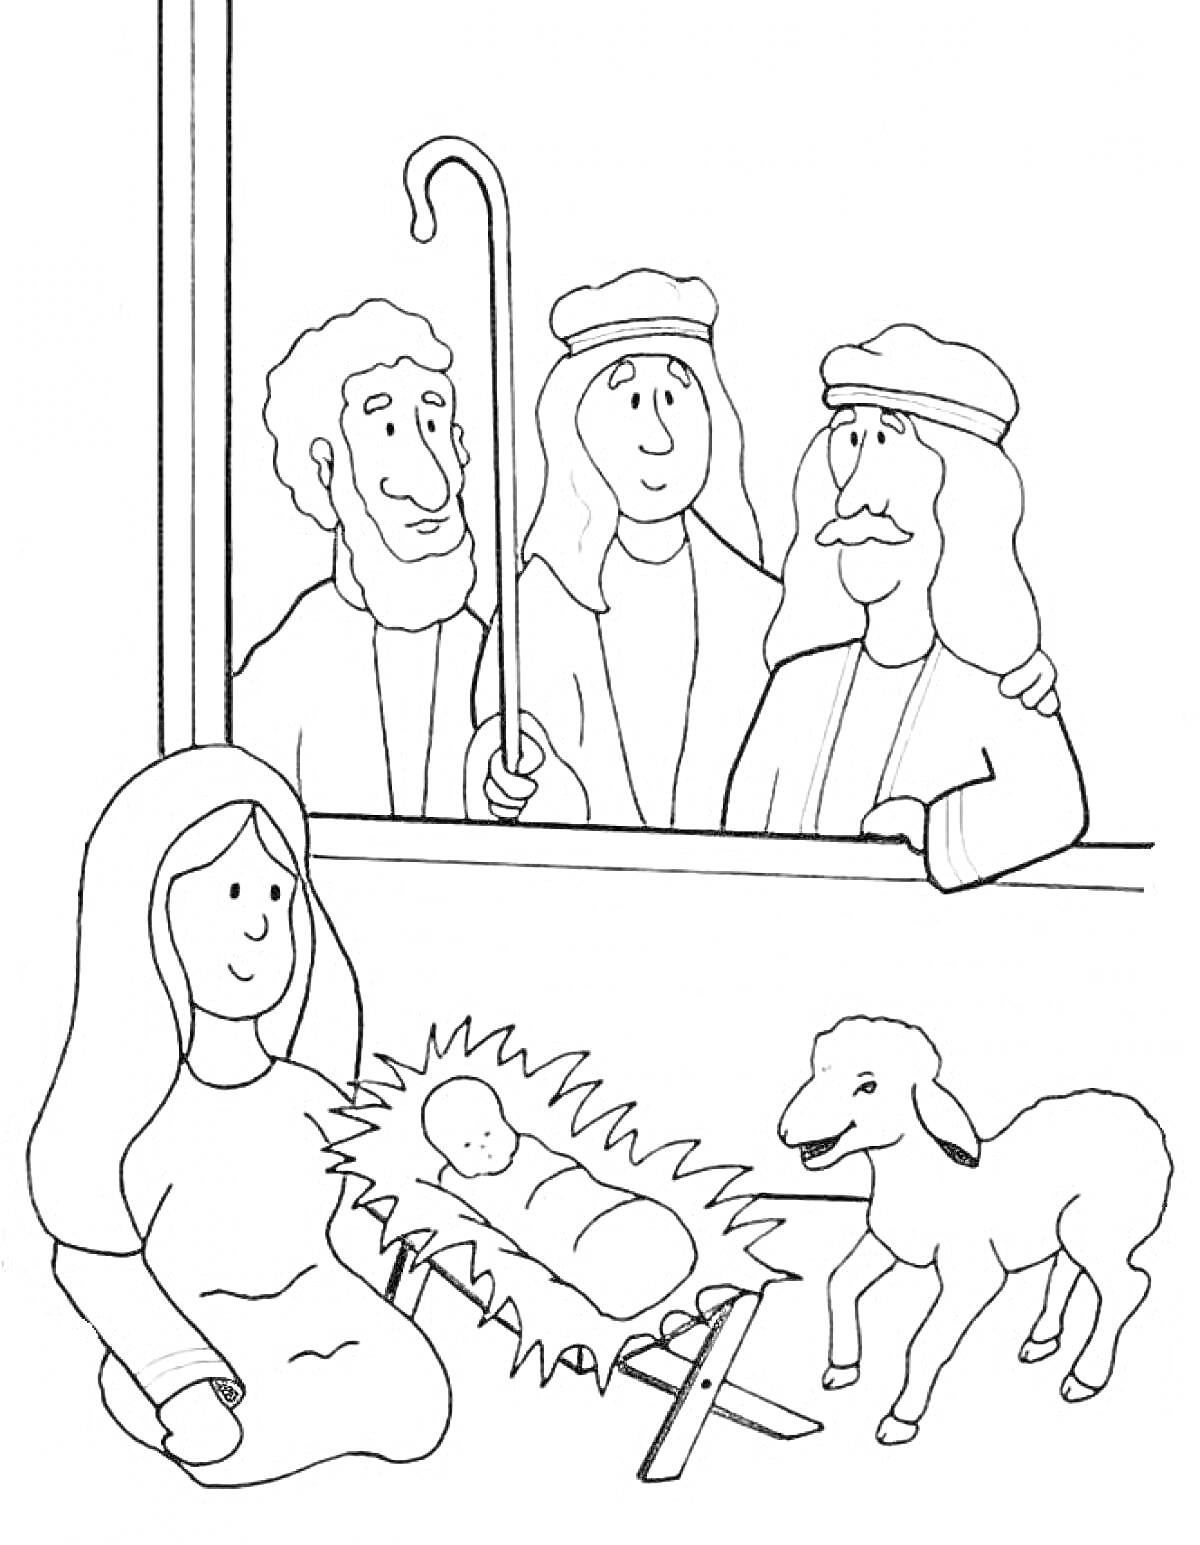 Раскраска Рождество — младенец Иисус в яслях, три пастуха у окна, женщина сидит рядом, овечка стоит рядом с яслями